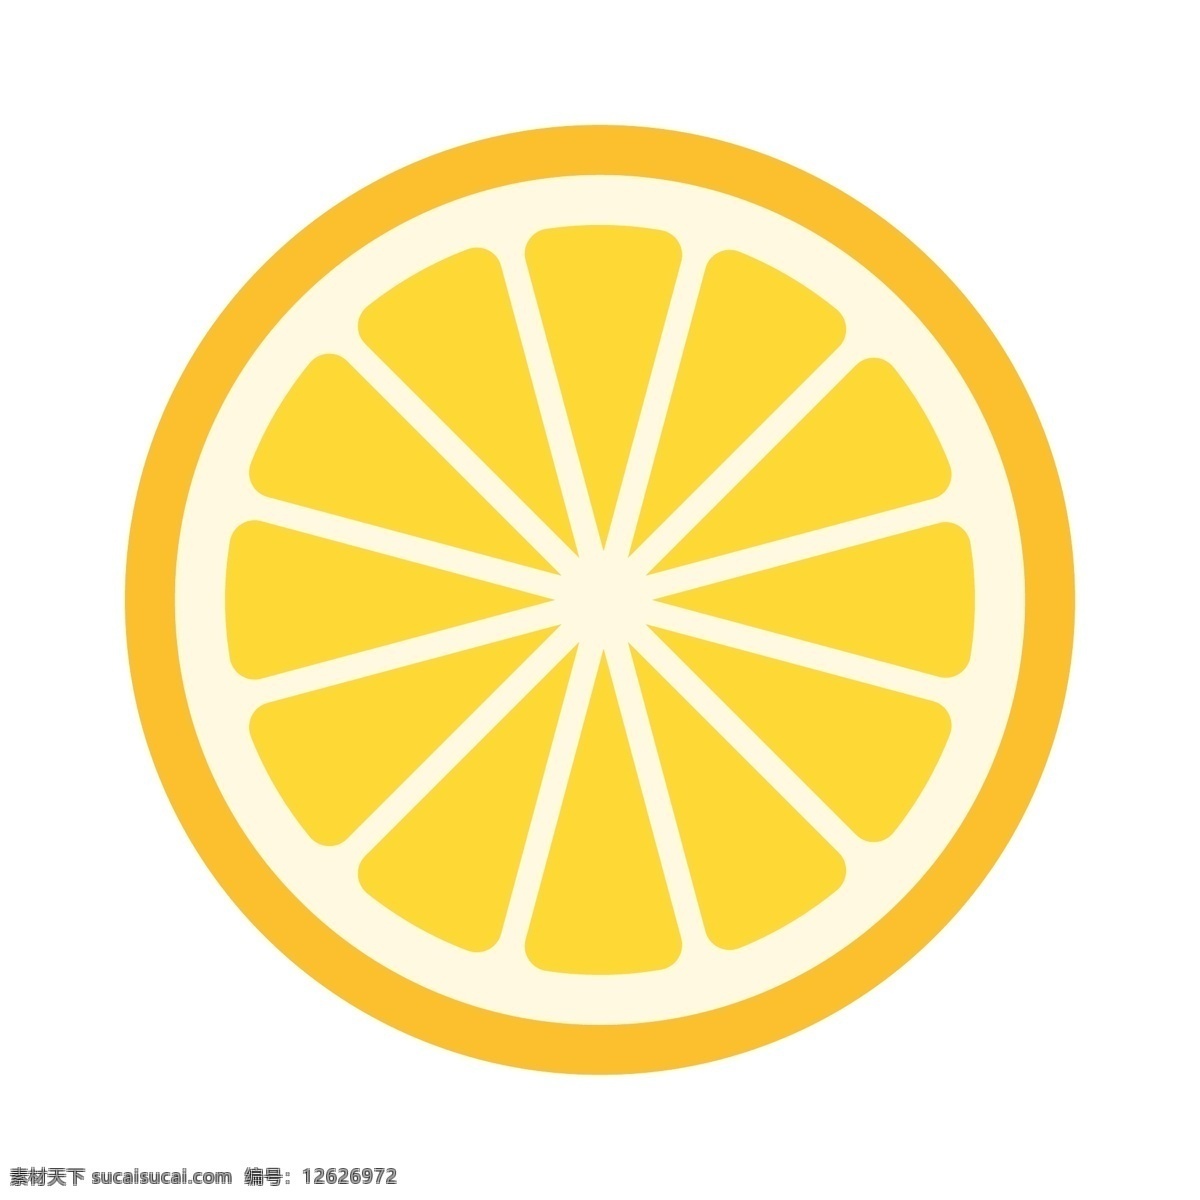 柠檬切片 卡通柠檬 水果切片 卡通水果 水果 柠檬 橘子切片 生活百科 餐饮美食